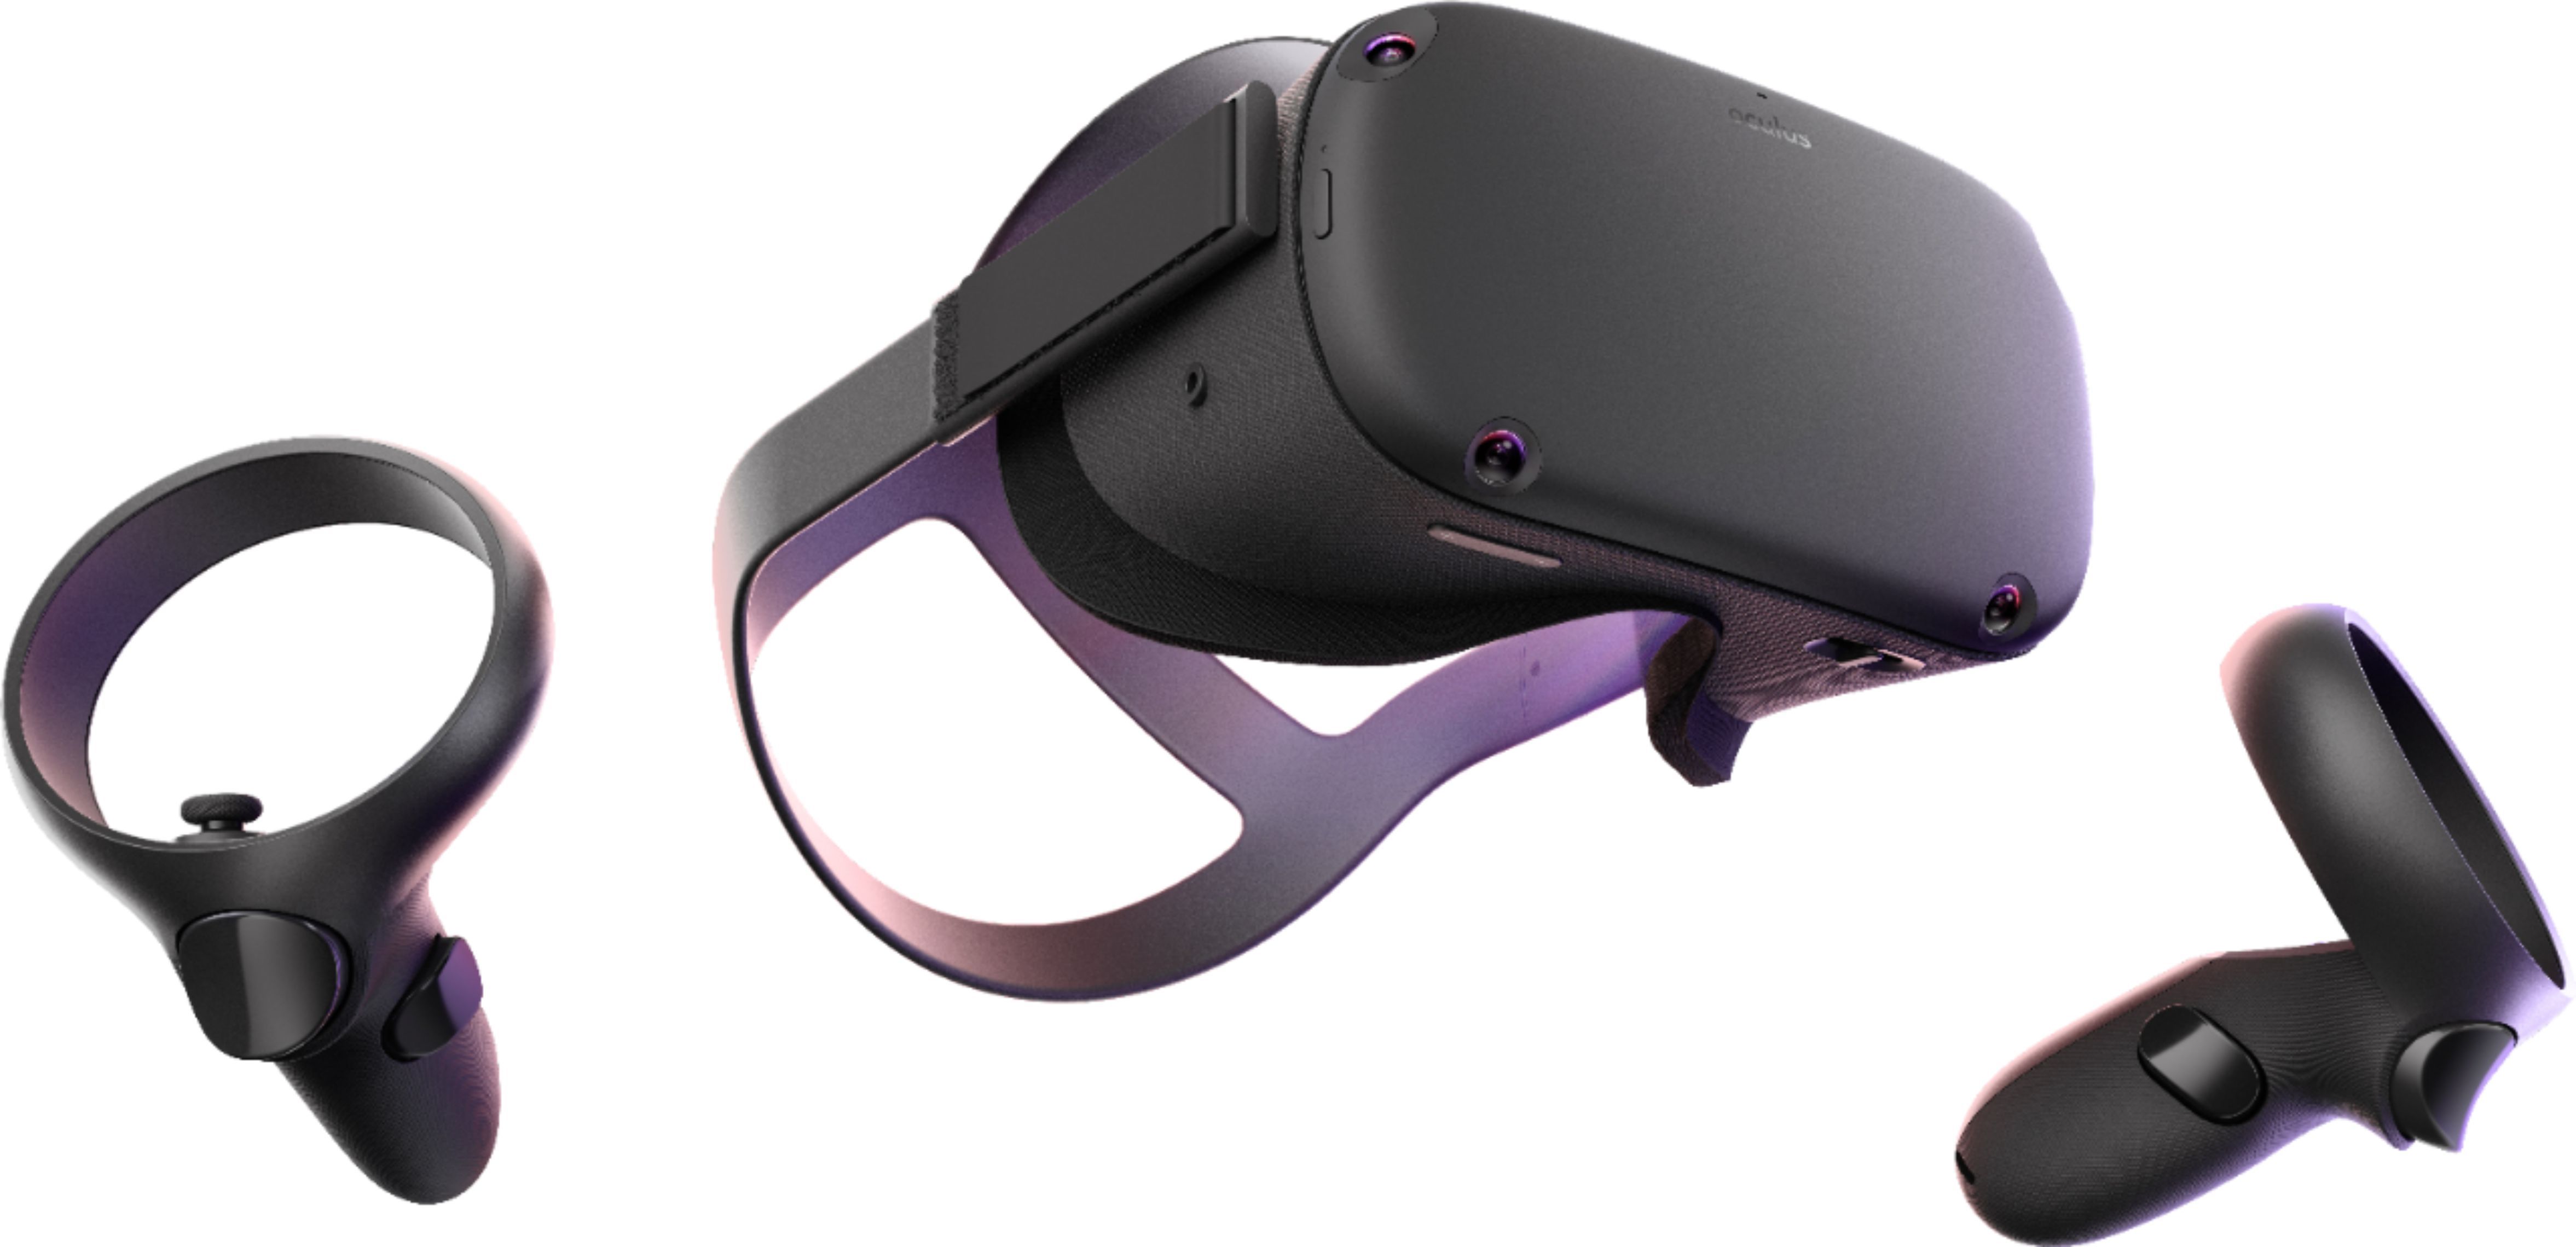 Oculus Quest All-in-one VR Gaming Headset 64GB Black 301-00170-01 - Best Buy | Best Buy U.S.